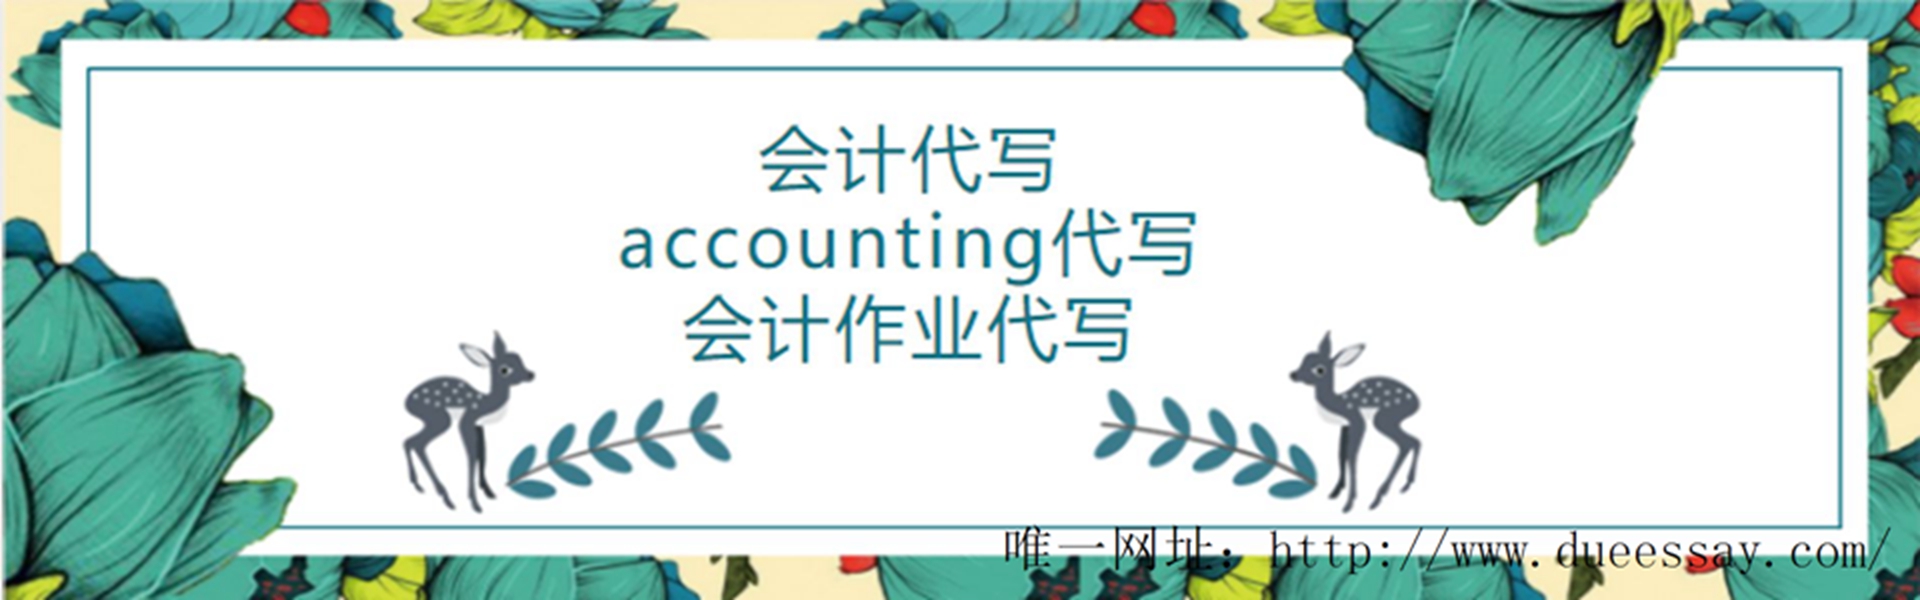 accounting代写